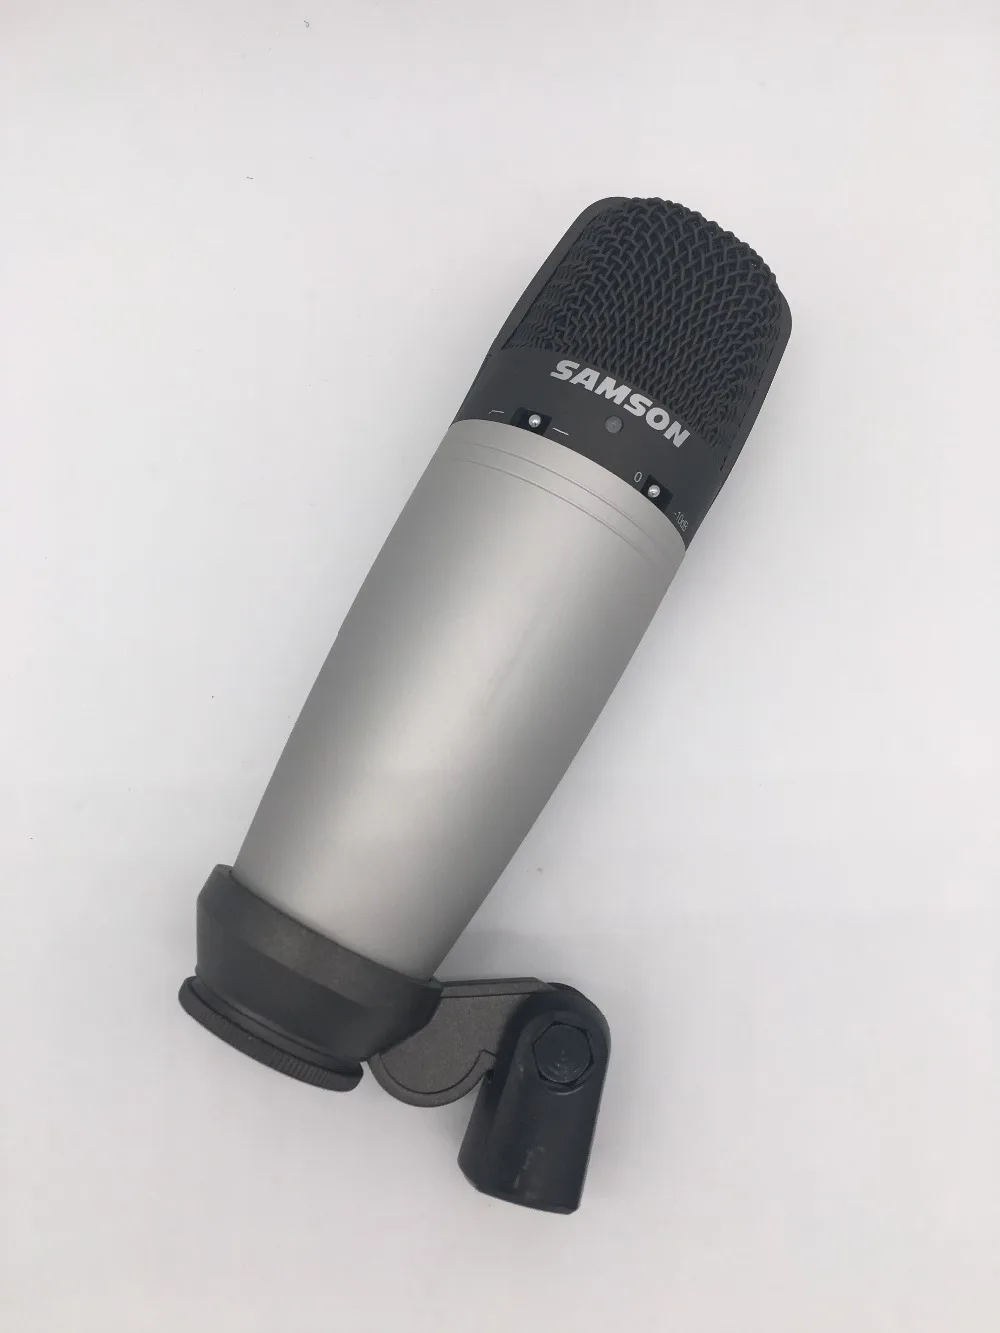 SAMSON C03 с большой диафрагмой мульти-шаблон Студийный конденсаторный микрофон с поворотной подставкой крепление и чехол для переноски для записи звука